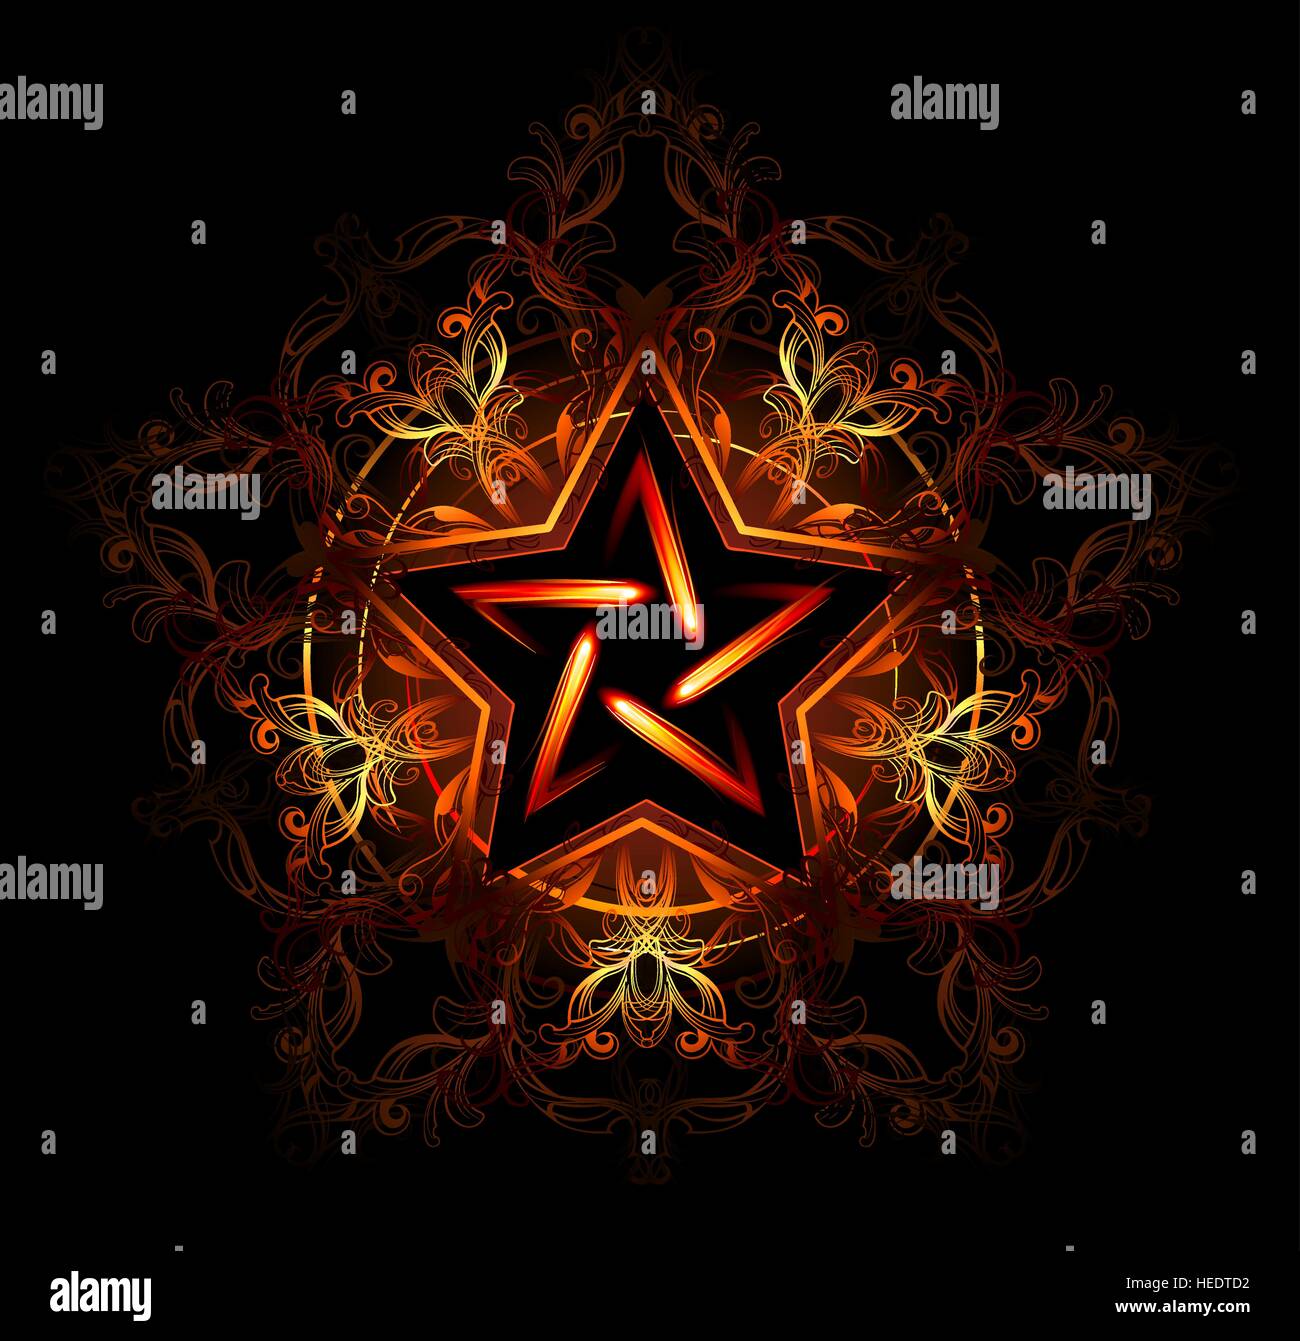 Wicca feurigen Stern, verziert mit rotem Muster auf schwarzem Hintergrund Stock Vektor